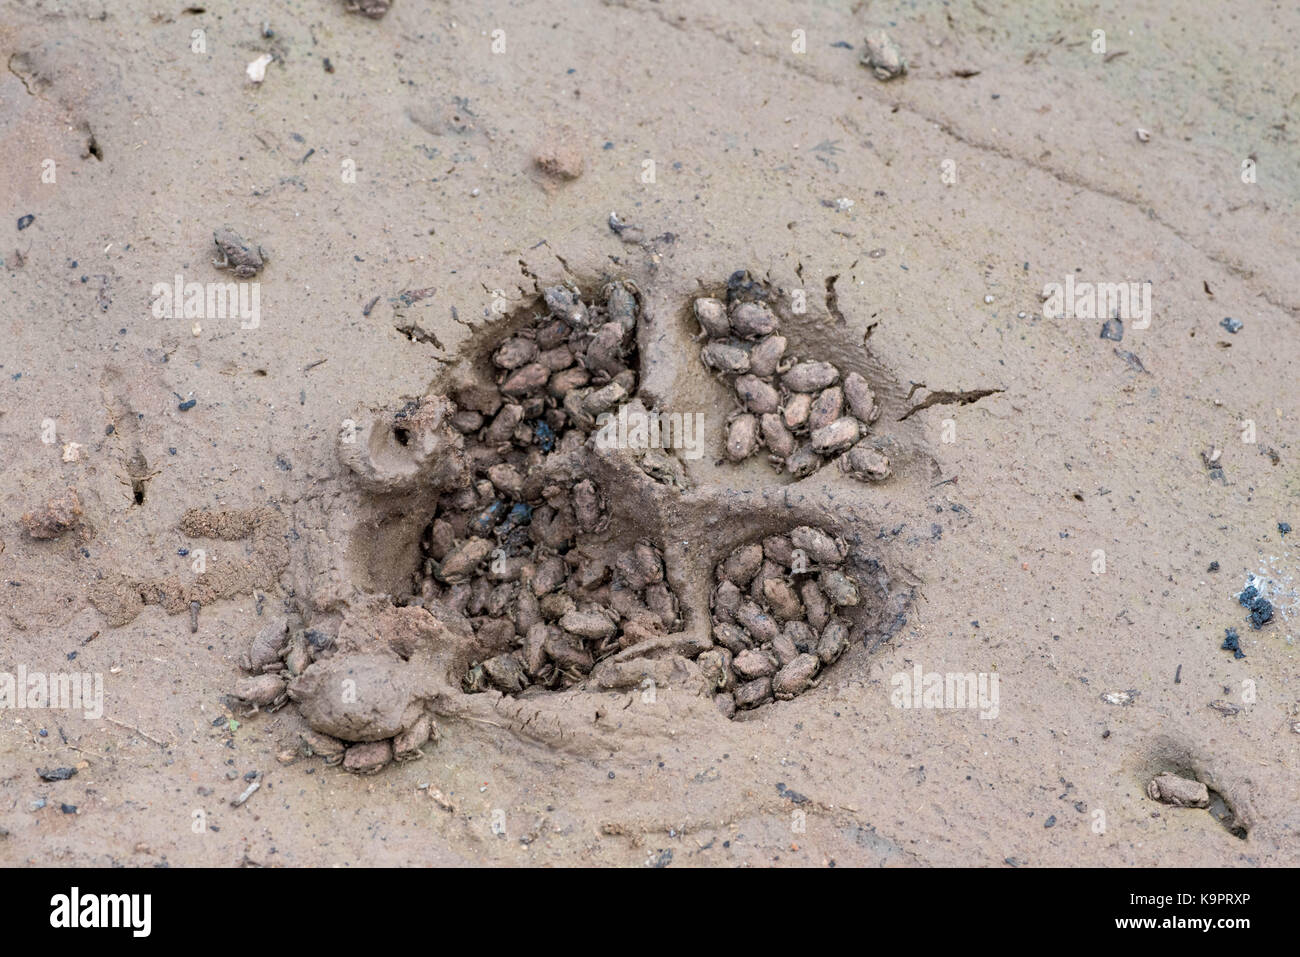 La camilla, scaphiopus spadefoot (cama), sufren una metamorfosis que se  refugian en las huellas de un perro. socorro co., Nuevo México, EE.UU  Fotografía de stock - Alamy